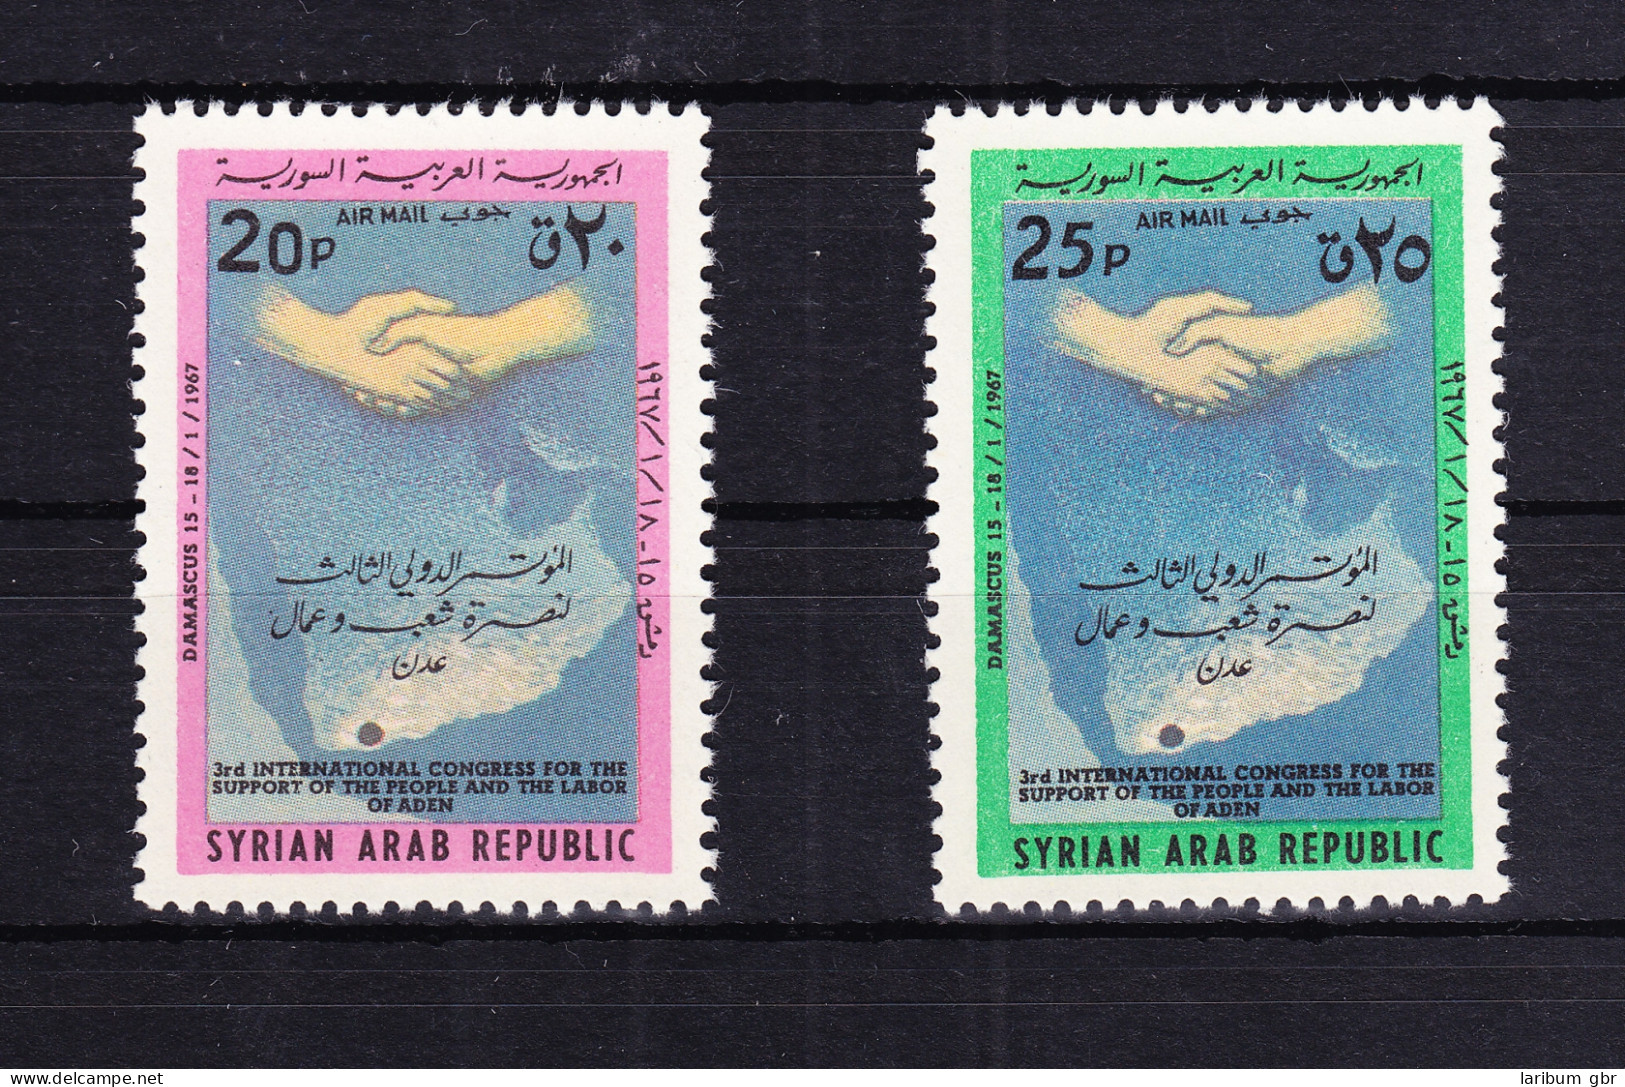 Syrien 959-960 Postfrisch Solidaritätskongreß Mit Aden, MNH #RB546 - Syria